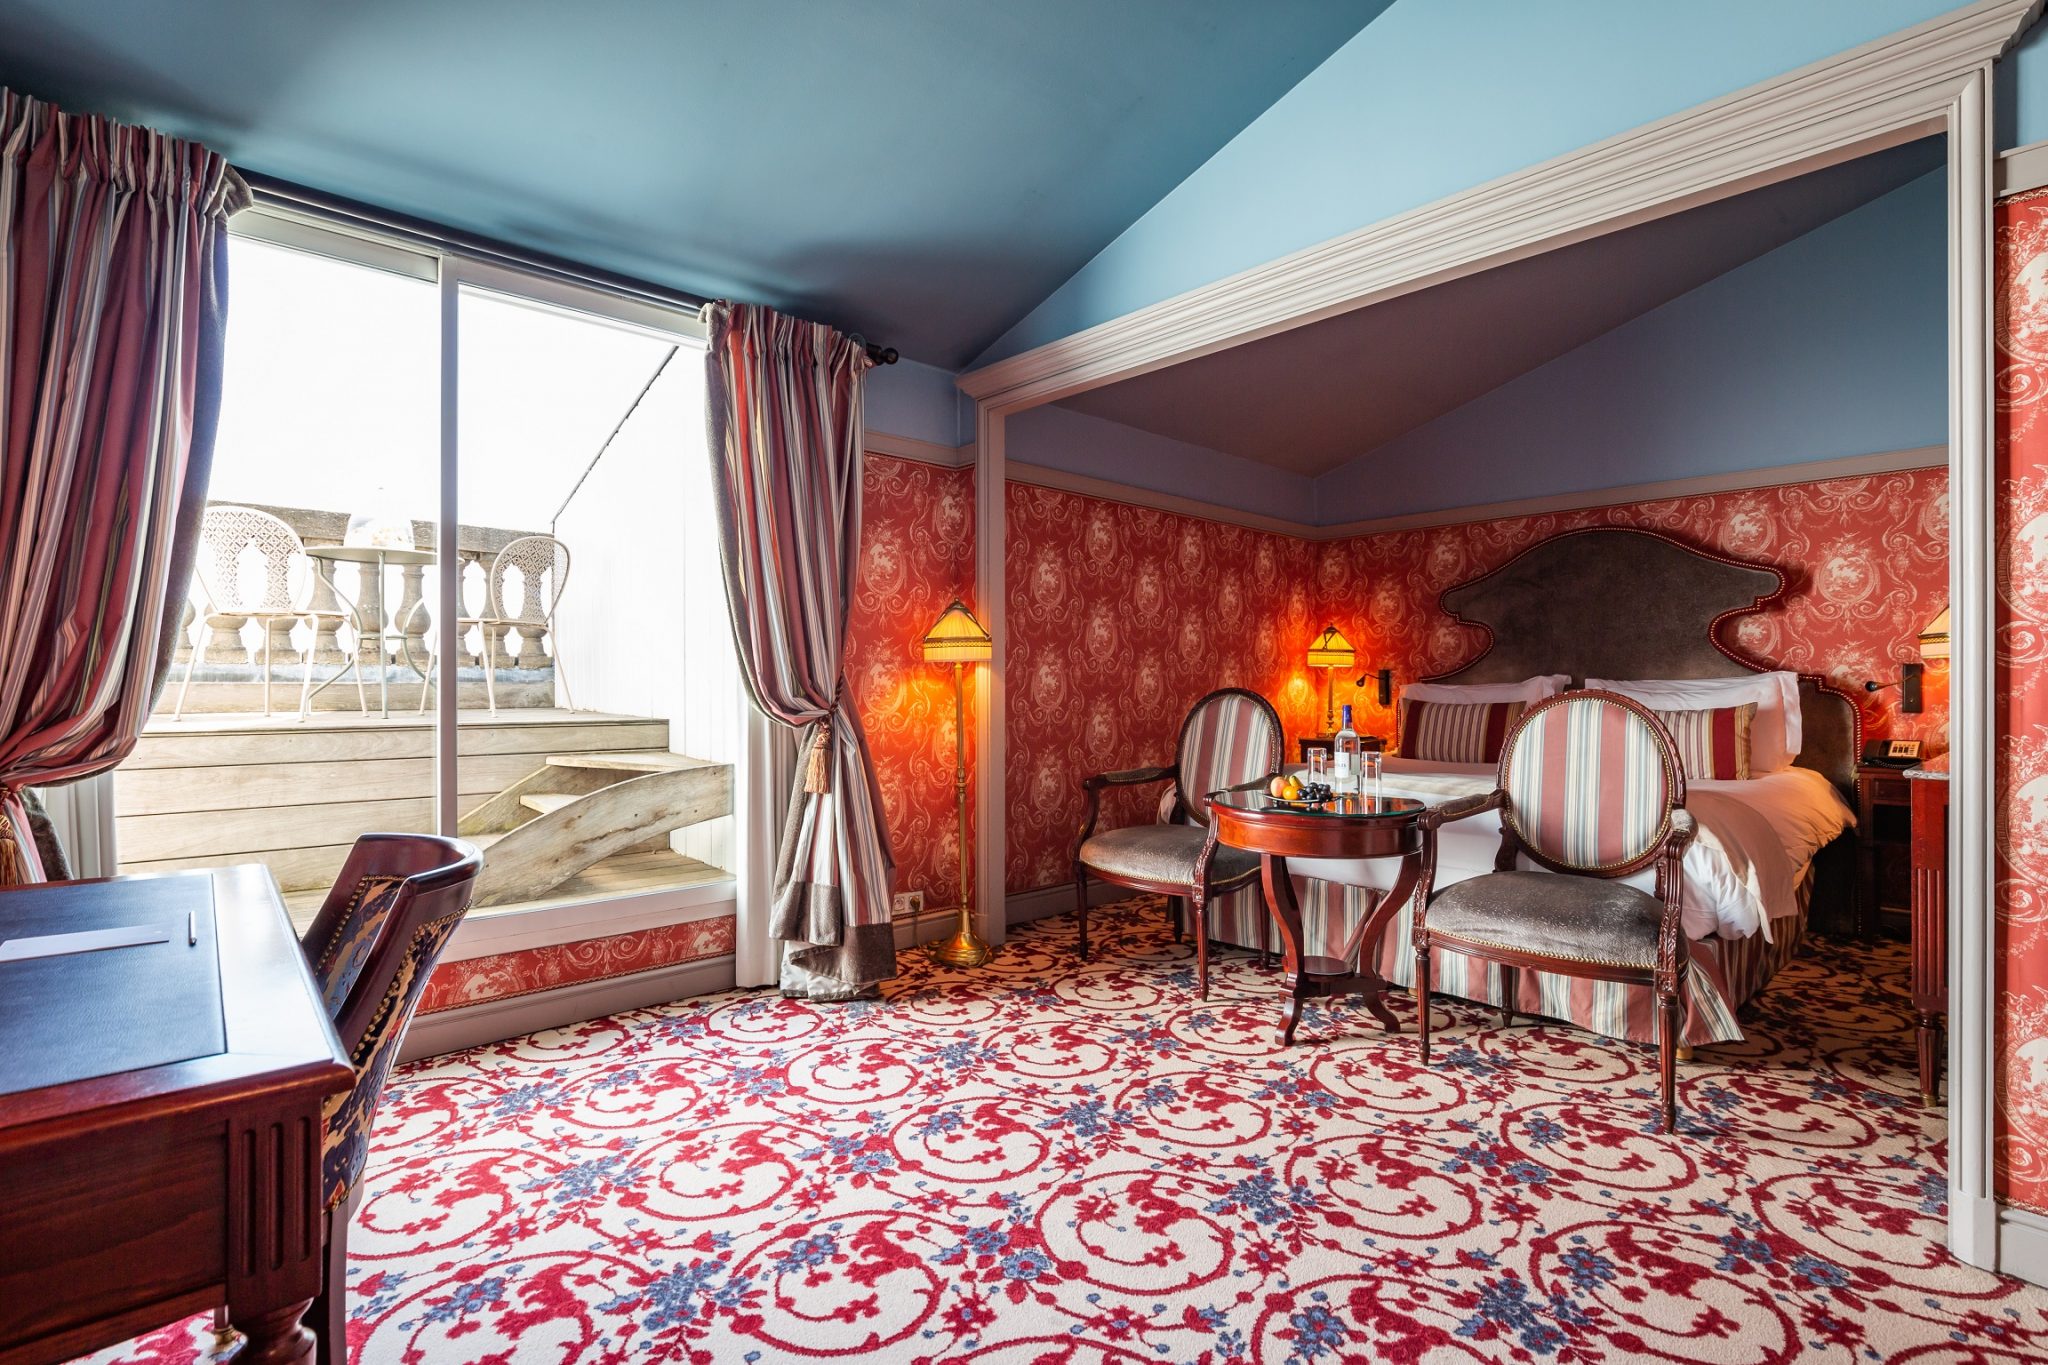 InterContinental Bordeaux Le Grand Hotel Chambre et Suite 5479271648722903904-CARR2765-scaled